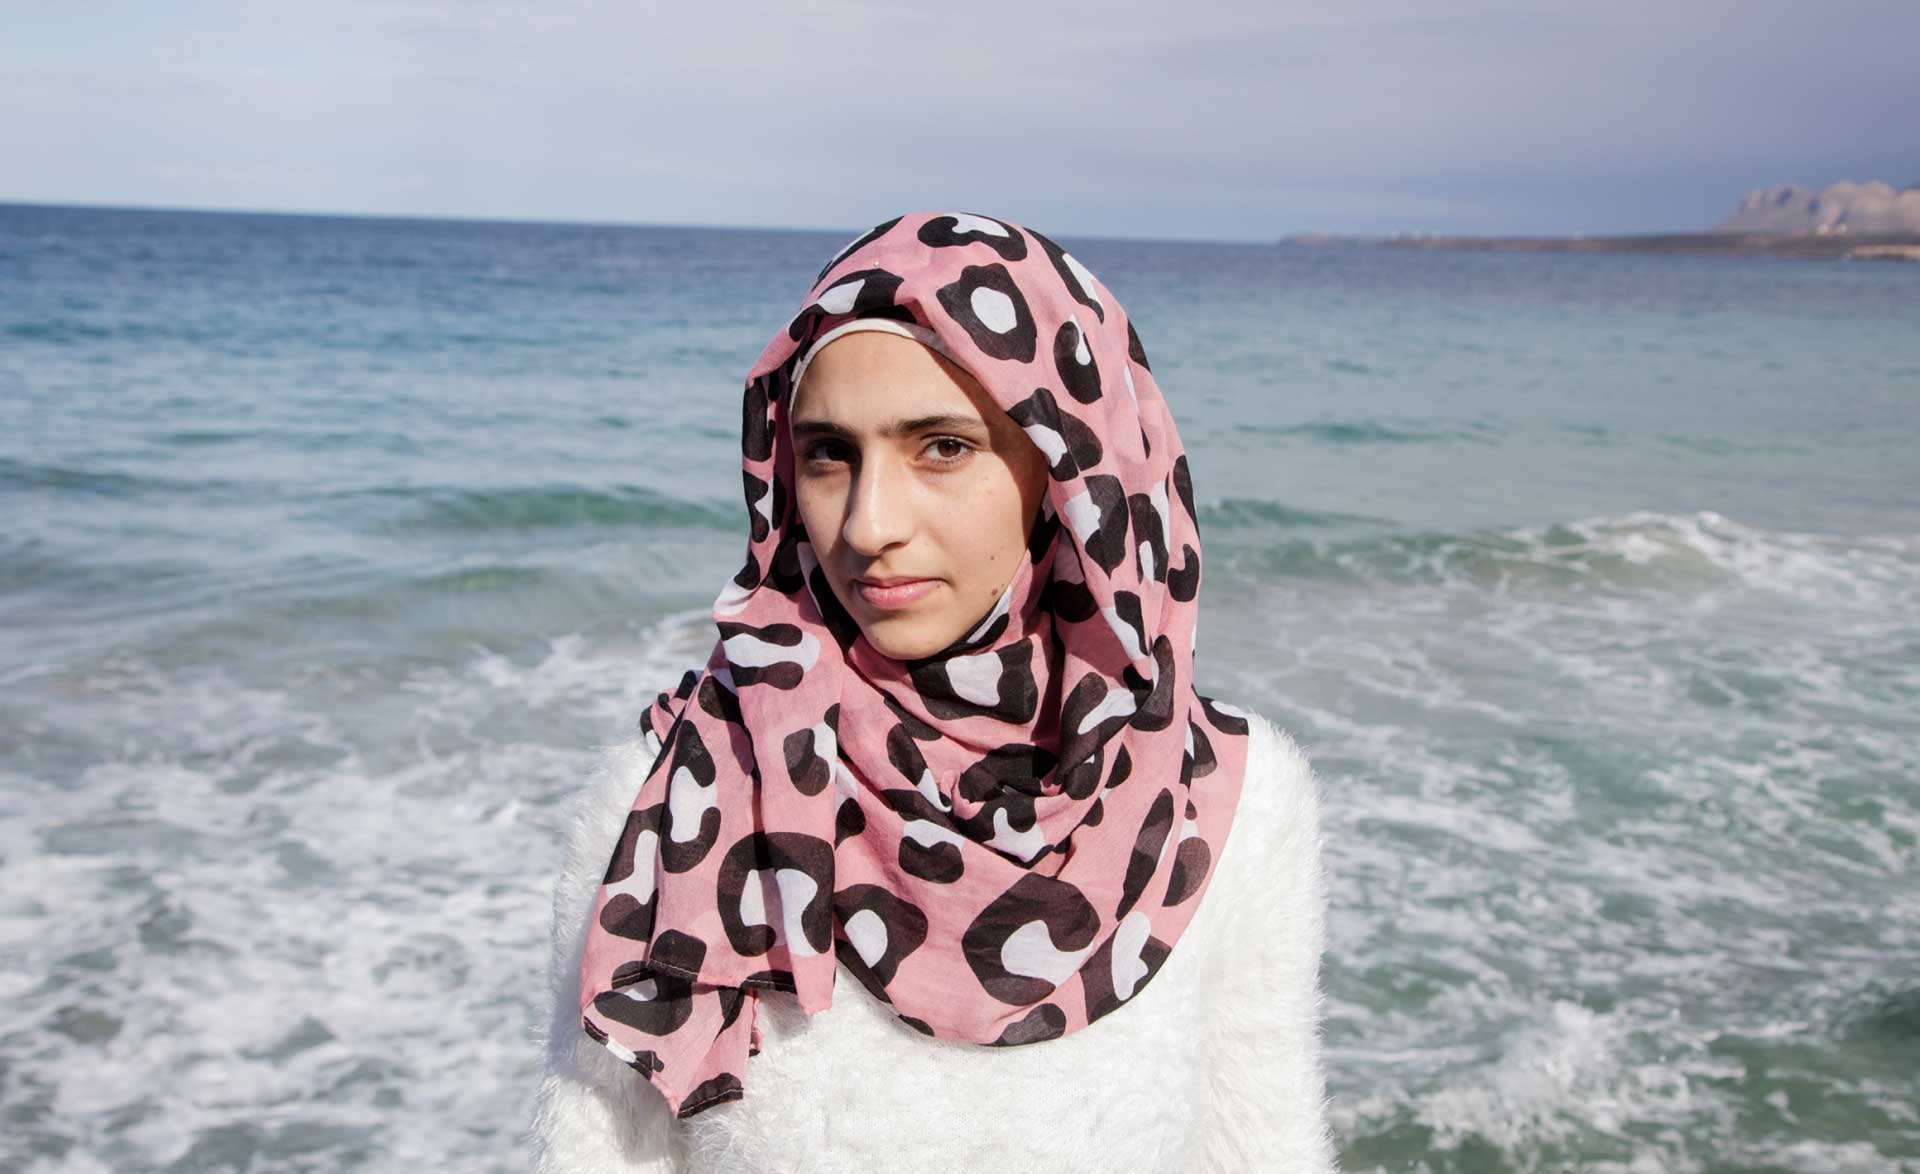 Doaa aus Syrien - Flucht über das Mittelmeer RF256235_doaa_9851_k.jpg